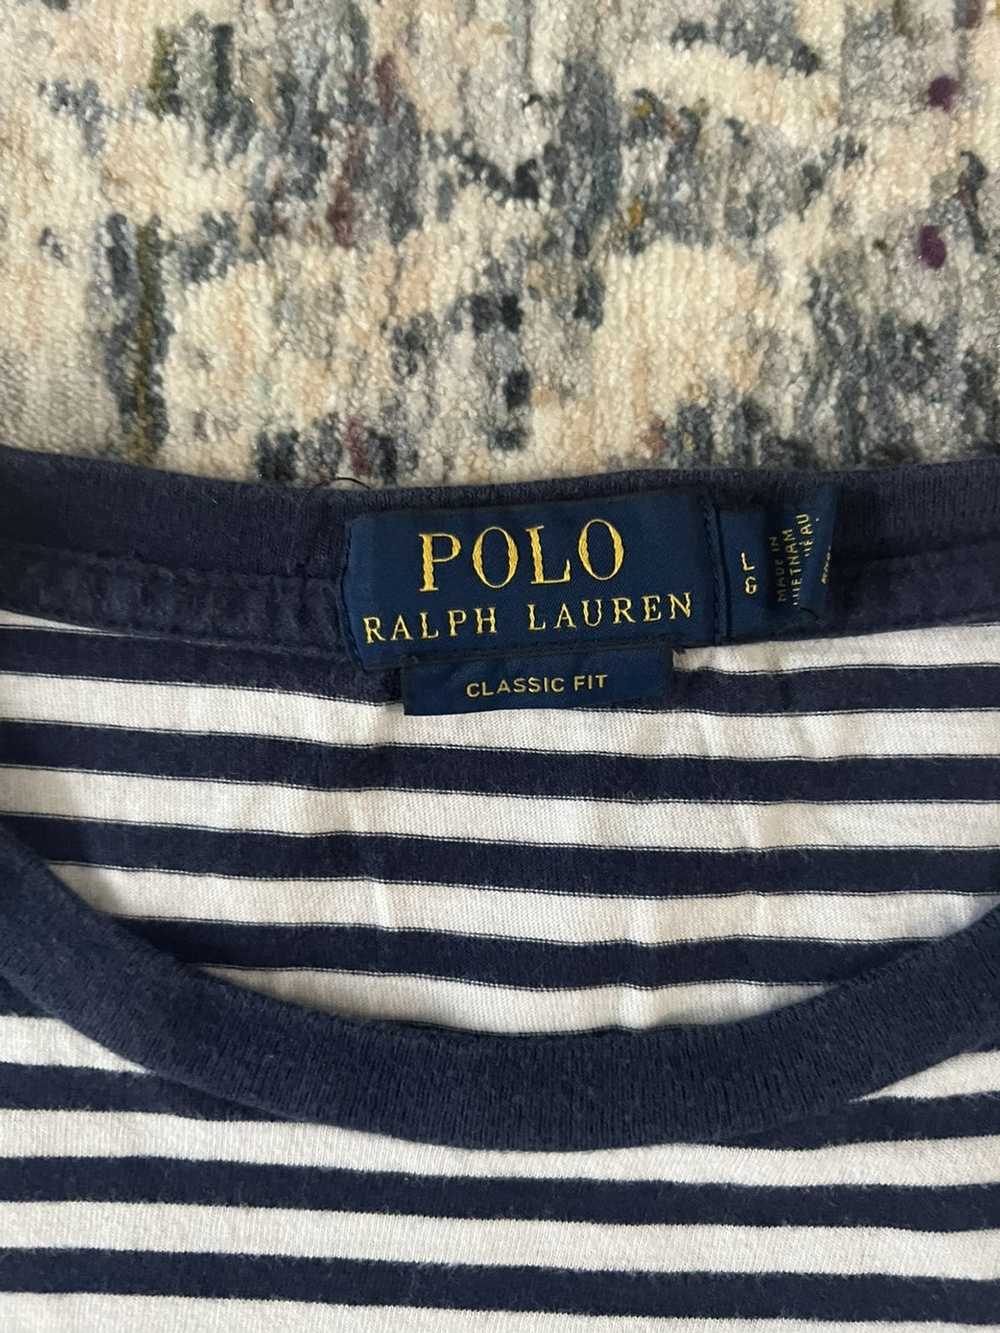 Polo Ralph Lauren Polo Ralph Lauren T-Shirt Sz L - image 2